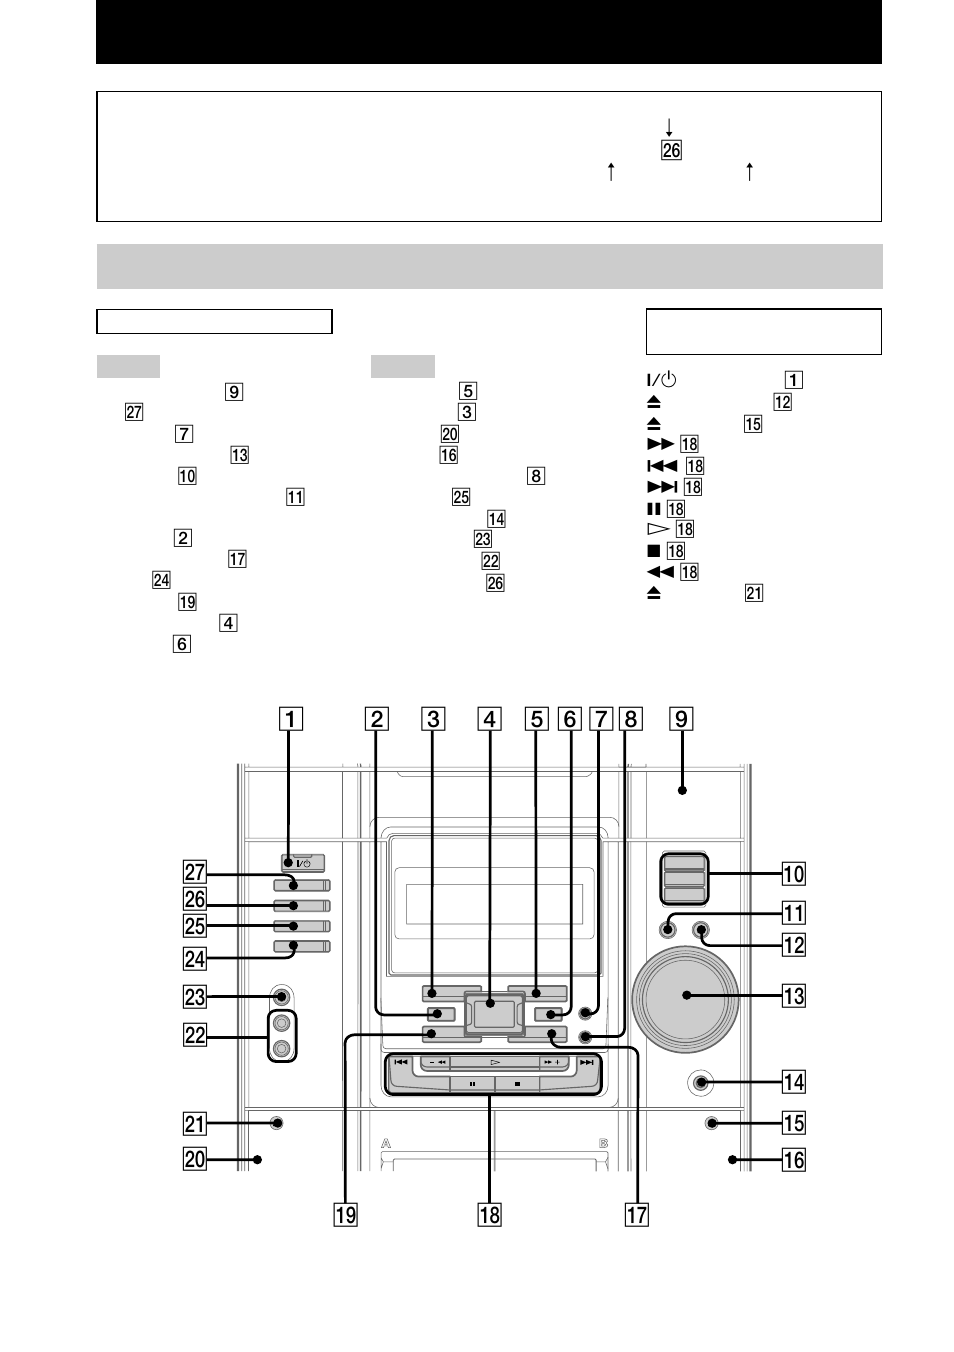 Unidad principal | Sony MHC-GX20 Manual del usuario | Página 4 / 32